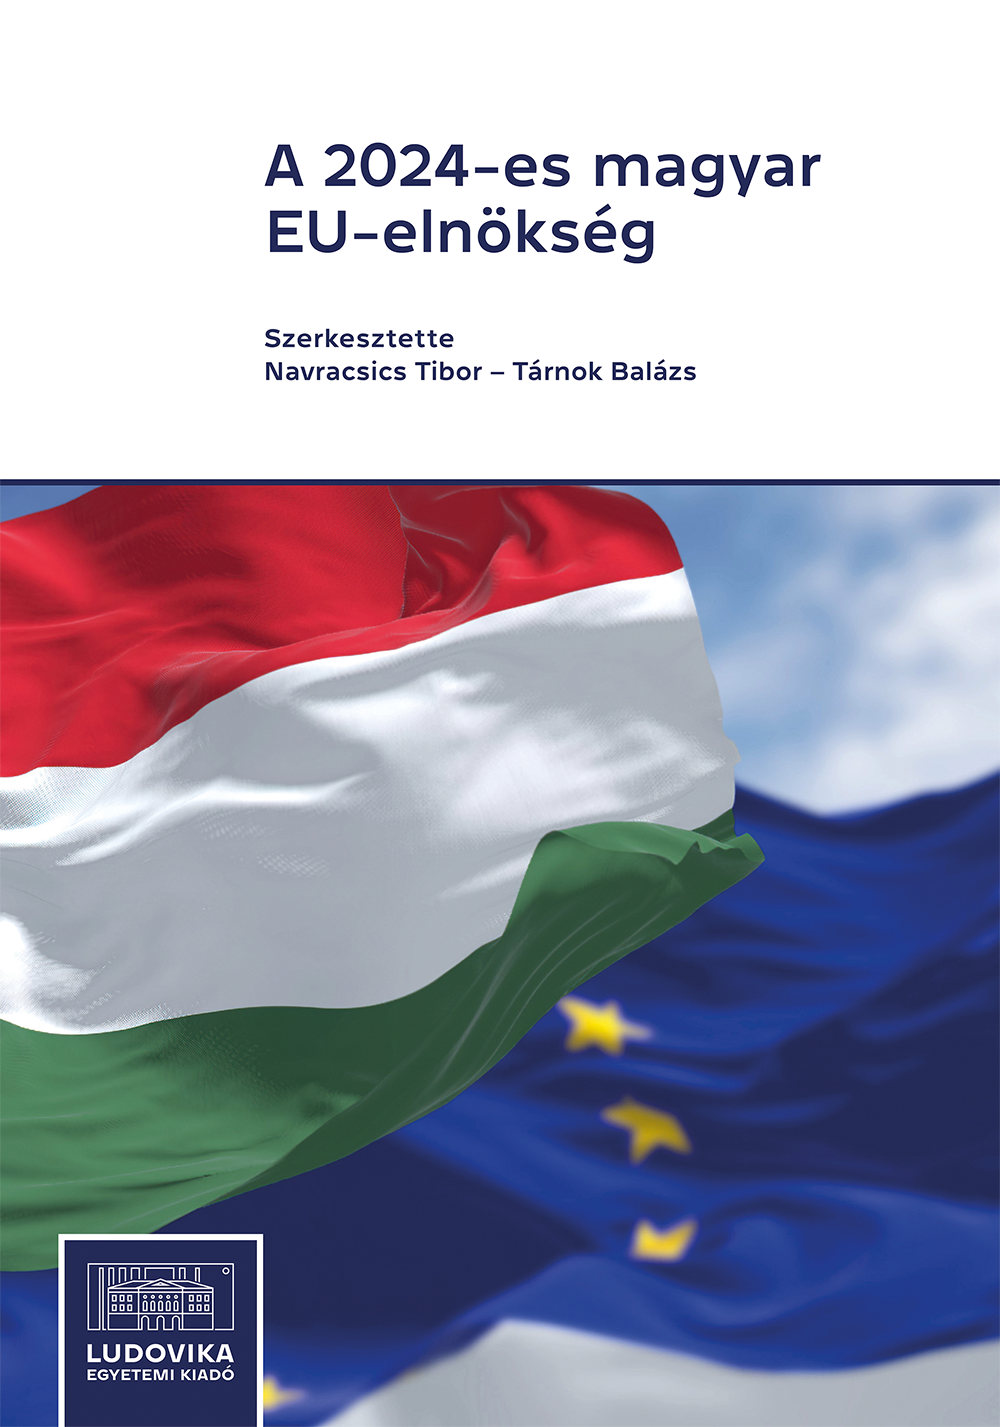 A 2024-es magyar EU-elnökség